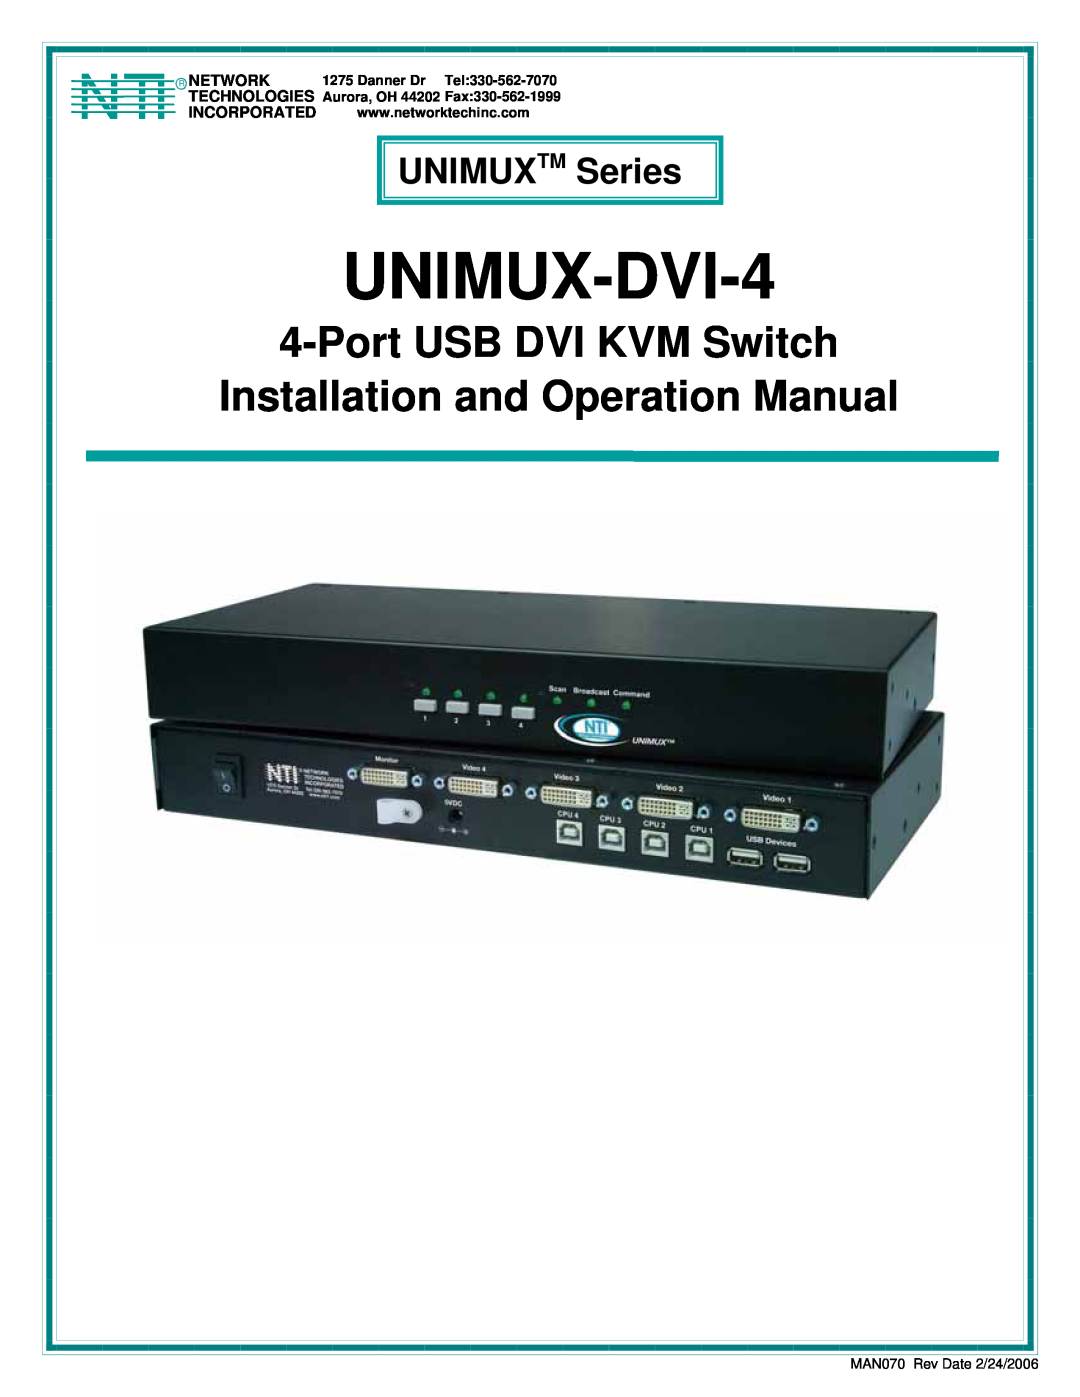 Network Technologies operation manual UNIMUX TM Series, UNIMUX-DVI-4, Port USB DVI KVM Switch 